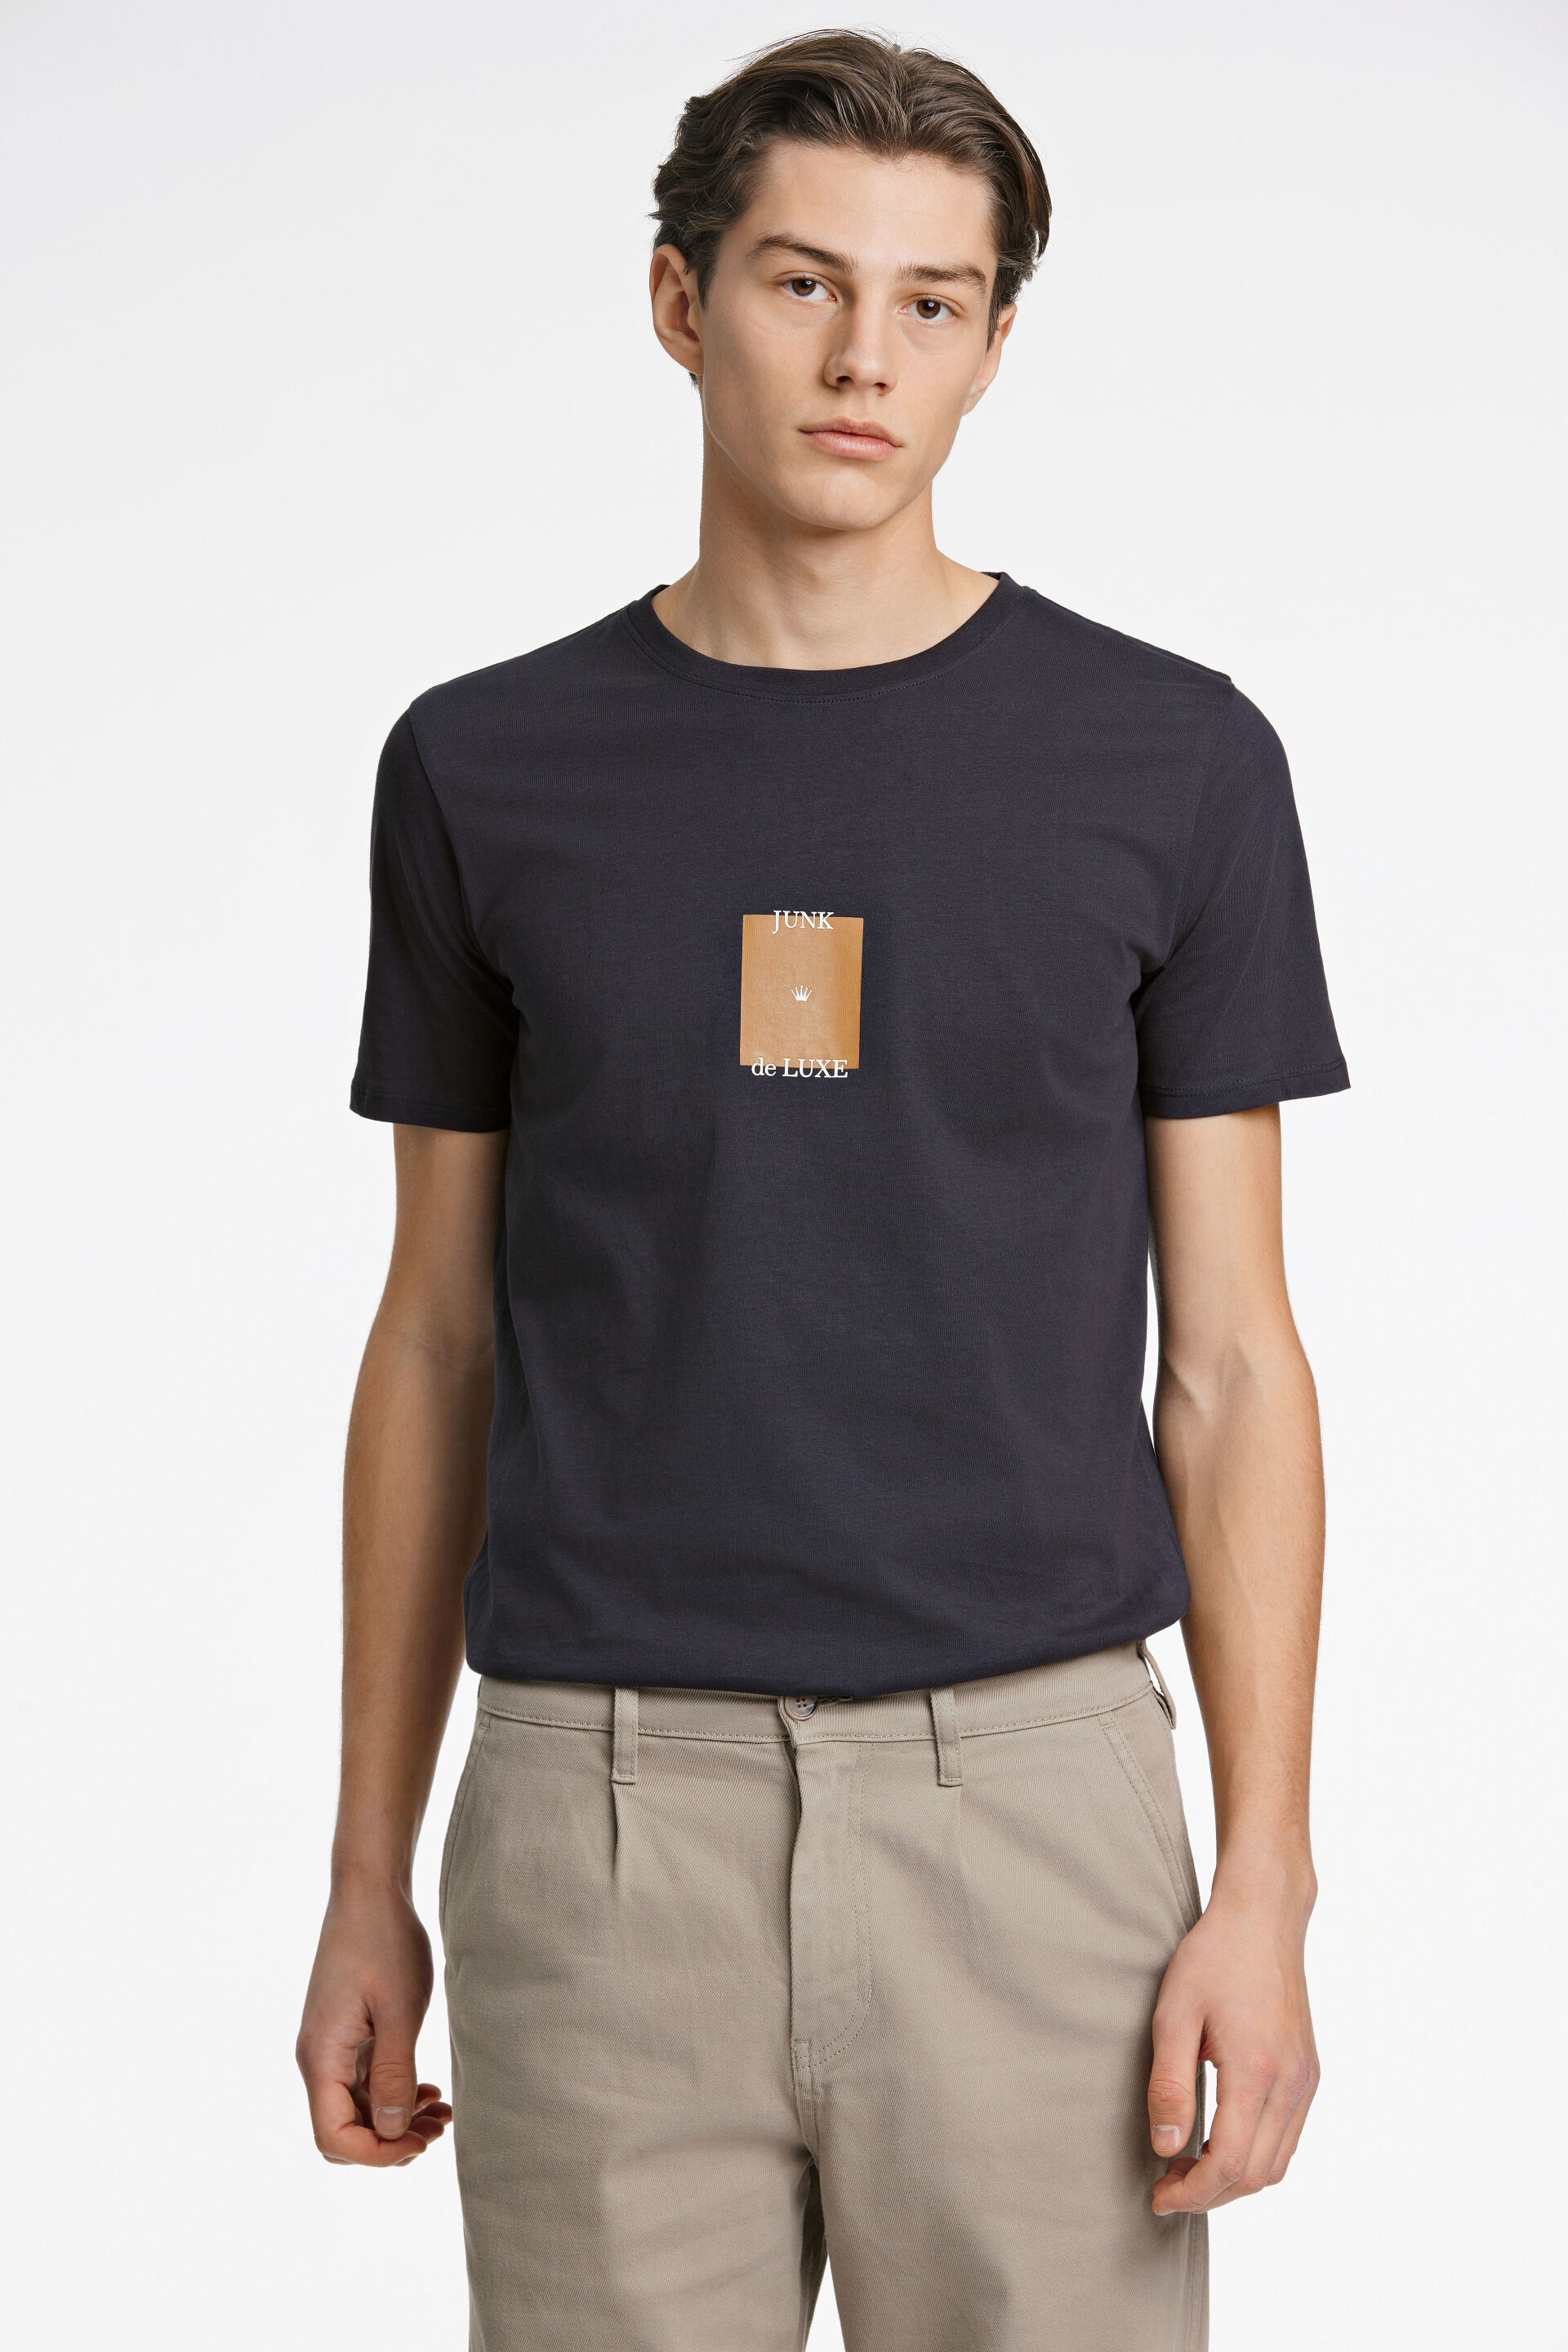 Junk de Luxe  T-shirt Blå 60-455024